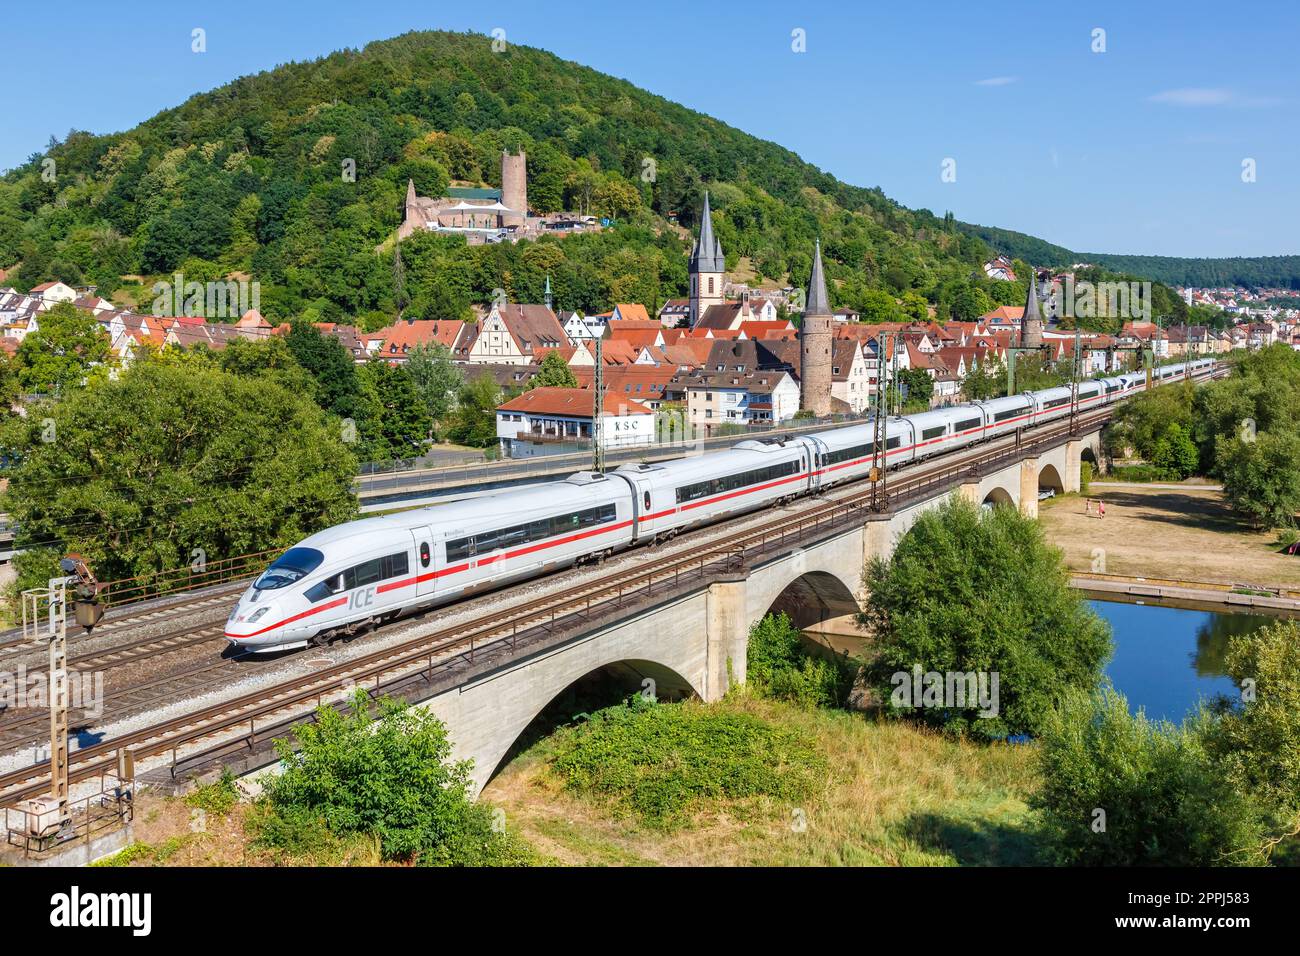 ICE 3 of Deutsche Bahn DB high-speed train railway in Gemuenden am Main, Germany Stock Photo